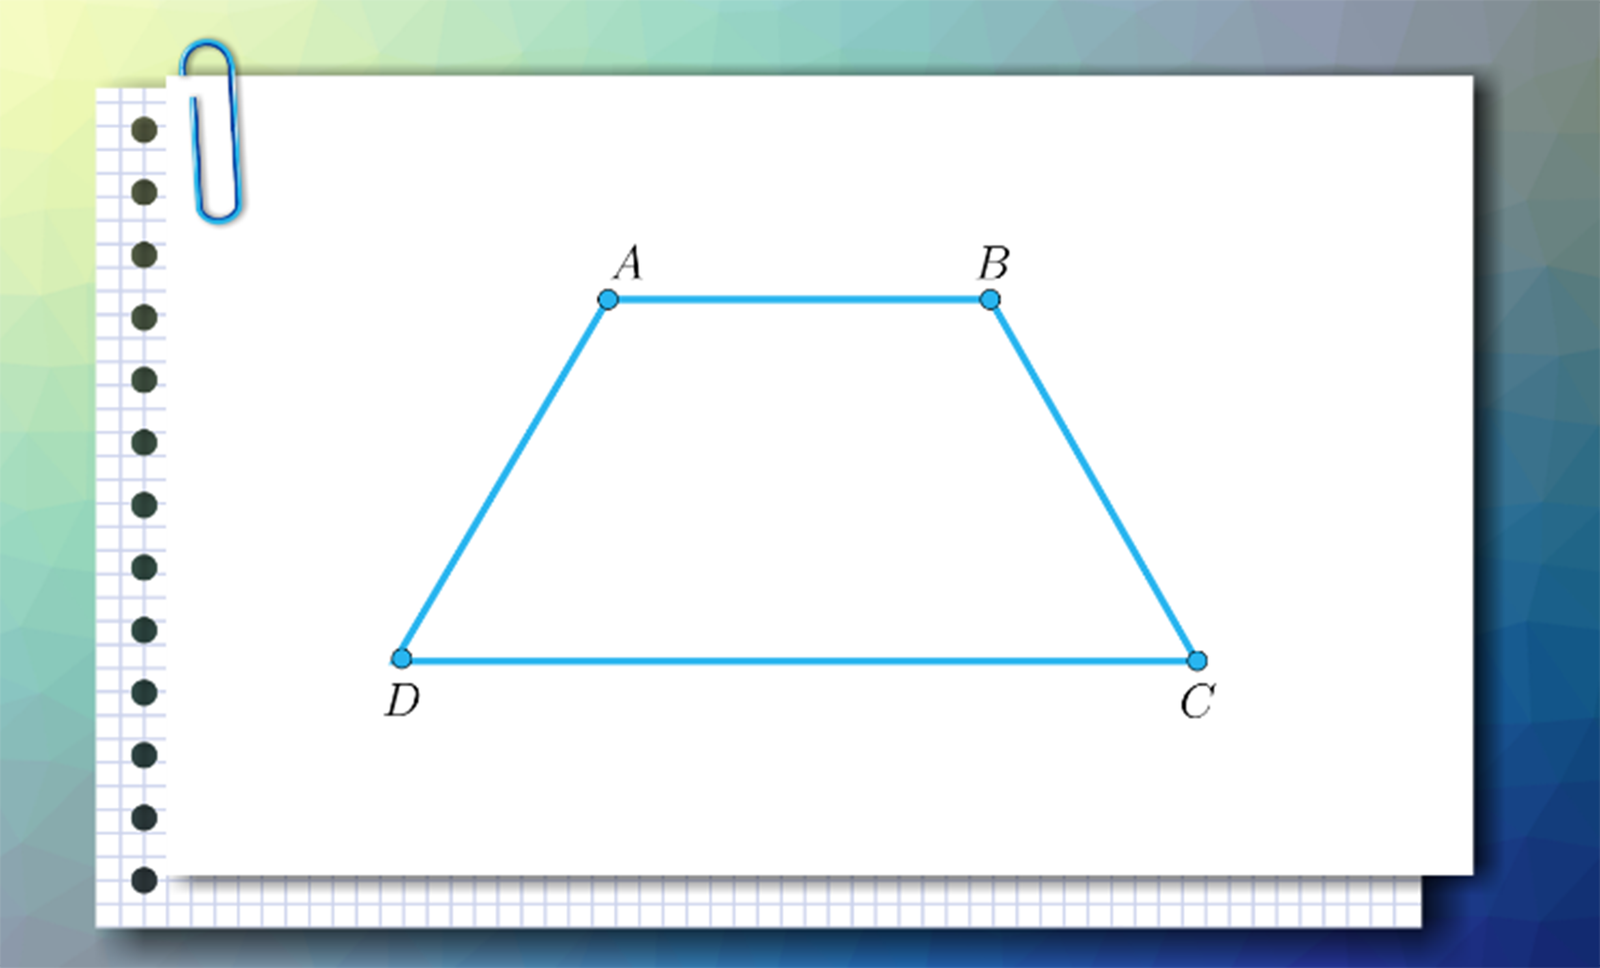 Slajd 1.  Rysunek przedstawia trapez ABCD, którego, krótszą podstawą jest bok A B, a dłuższą C D.  Treść: Rozważymy przedstawiony na ilustracji dowolny trapez ABCD. Slajd 2.   Rysunek przedstawia trapez ABCD, którego, krótszą podstawą jest bok A B, a dłuższą C D.  Przez wierzchołek A przechodzi prosta k, a przez wierzchołek D prosta l tak, że obie proste przecinają się w punkcie O wewnątrz trapezu. Treść: Następnie poprowadźmy prostą k przechodzącą przez punkt A i prostą l przechodzącą przez punkt D , tak by k i l przecięły się w punkcie O wewnątrz trapezu. Slajd 3. Rysunek pozostaje bez zmian. Treść : Udowodnimy następujące twierdzenie: Proste k i l są dwusiecznymi kątów, odpowiednio, DAB i ADC wtedy i tylko wtedy, gdy punkt O jest równoodległy od odcinków DC, AB i AD. Slajd 4. Rysunek przedstawia trapez ABCD, którego, krótszą podstawą jest bok A B, a dłuższą C D.  Przez wierzchołek A przechodzi prosta k, a przez wierzchołek D prosta l tak, że obie proste przecinają się w punkcie O wewnątrz trapezu. Na boku  A D zaznaczono punkt F taki, że odcinek O F jest prostopadły do tego boku, na boku A B zaznaczono punkt G taki, że odcinek  O G jest prostopadły do tego boku, na boku D C zaznaczono punkt E taki, że odcinek O E jest prostopadły do tego boku.  Proste k i l sa dwusiecznymi kątów odpowiednio  D A B oraz A D C. Miara kąta F D O wynosi beta, a miara kąta F A O wynosi alfa. Treść: Załóżmy najpierw, że proste k i l są dwusiecznymi kątów DAB i ADC. Zaznaczono odcinek OG, prostopadły do podstawy AB, odcinek OF prostopadły do ramienia AD, oraz odcinek OE prostopadły do podstawy CD. Chcemy pokazać, że długości odcinków EO, FO i GO są równe. Slajd 5. Rysunek jak na slajdzie numer 4, z zaznaczonym dodatkowo na zielono trójkątem D OF oraz na pomarańczowo trójkątem D E O. Treść: Zauważmy, że trójkąty EOD i FOD są przystające, cecha bok, kąt, bok. Slajd 6. Rysunek jak w poprzednim slajdzie z zaznaczonymi na czerwono odcinkami F O i O E. Treść:  Z własności tej wynika, że długość odcinka FO jest równa długości odcinka EO. Slajd 7. Rysunek przedstawia trapez ABCD, którego, krótszą podstawą jest bok A B, a dłuższą C D.  Przez wierzchołek A przechodzi prosta k, a przez wierzchołek D prosta l tak, że obie proste przecinają się w punkcie O wewnątrz trapezu. Na boku  A D zaznaczono punkt F taki, że odcinek O F jest prostopadły do tego boku, na boku A B zaznaczono punkt G taki, że odcinek  O G jest prostopadły do tego boku, na boku D C zaznaczono punkt E taki, że odcinek O E jest prostopadły do tego boku.  Proste k i l są dwusiecznymi kątów odpowiednio  D A B oraz A D C. Miara kąta F D O wynosi beta, a miara kąta F A O wynosi alfa. Odcinki F O oraz O G sa zaznaczone na czerwono.  Treść: Analogicznie, trójkąty GOA i FOA są przystające. Stąd długość odcinka GO jest równa długości odcinka FO. Slajd 8. Rysunek przedstawia trapez ABCD, którego, krótszą podstawą jest bok A B, a dłuższą C D.  Przez wierzchołek A przechodzi prosta k, a przez wierzchołek D prosta l tak, że obie proste przecinają się w punkcie O wewnątrz trapezu. Na boku  A D zaznaczono punkt F taki, że odcinek O F jest prostopadły do tego boku, na boku A B zaznaczono punkt G taki, że odcinek  O G jest prostopadły do tego boku, na boku D C zaznaczono punkt E taki, że odcinek O E jest prostopadły do tego boku. Odcinki F O, O G oraz E O mają długość x. Treść: Załóżmy teraz, że punkt O jest równoodległy od odcinków DC, AB i AD. Oznacza to, że długości odcinków EO, FO i GO  są równe. Oznaczono je literą x. Pokażemy, że proste k i l są dwusiecznymi odpowiednich kątów. Slajd 9. Rysunek przedstawia trapez ABCD, którego, krótszą podstawą jest bok A B, a dłuższą C D.  Przez wierzchołek A przechodzi prosta k, a przez wierzchołek D prosta l tak, że obie proste przecinają się w punkcie O wewnątrz trapezu. Na boku  A D zaznaczono punkt F taki, że odcinek O F jest prostopadły do tego boku, na boku A B zaznaczono punkt G taki, że odcinek  O G jest prostopadły do tego boku, na boku D C zaznaczono punkt E taki, że odcinek O E jest prostopadły do tego boku.  Odcinki F O, O G oraz E O mają długość x. Odcinek D O ma długość y. Zatem długość odcinka F D oraz D E jest równa y2-x2 . Treść: Zauważmy, że trójkąty EOD i FOD są przystające, cecha bok, bok, bok. Stąd, długości odcinków DE, oraz EO wynoszą y2-x2. Slajd 10. Rysunek bez zmian z dodatkowym komentarzem, że prosta l jest dwusieczną kąta A D C. Treść: Z własności tej wynika, że miara kąta EDO jest taka sama jak miara kąta ODF. Tym samym prosta l jest dwusieczną kąta ADC. Slajd 11. Rysunek przedstawia trapez ABCD, którego, krótszą podstawą jest bok A B, a dłuższą C D.  Przez wierzchołek A przechodzi prosta k, a przez wierzchołek D prosta l tak, że obie proste przecinają się w punkcie O wewnątrz trapezu. Na boku  A D zaznaczono punkt F taki, że odcinek O F jest prostopadły do tego boku, na boku A B zaznaczono punkt G taki, że odcinek  O G jest prostopadły do tego boku, na boku D C zaznaczono punkt E taki, że odcinek O E jest prostopadły do tego boku.  Proste k i l są dwusiecznymi kątów odpowiednio D A B oraz A D C. Miary kątów F A O  oraz G A O wynoszą po alfa. Odcinki F O oraz O G mają długość x. Wynika stąd, że k jest dwusieczną kąta D  A B. Treść: Analogicznie, trójkąty GOA i FOA są przystające. Stąd miara kąta OAF jest taka sama jak miara kąta OAG i oznaczono je alfa.